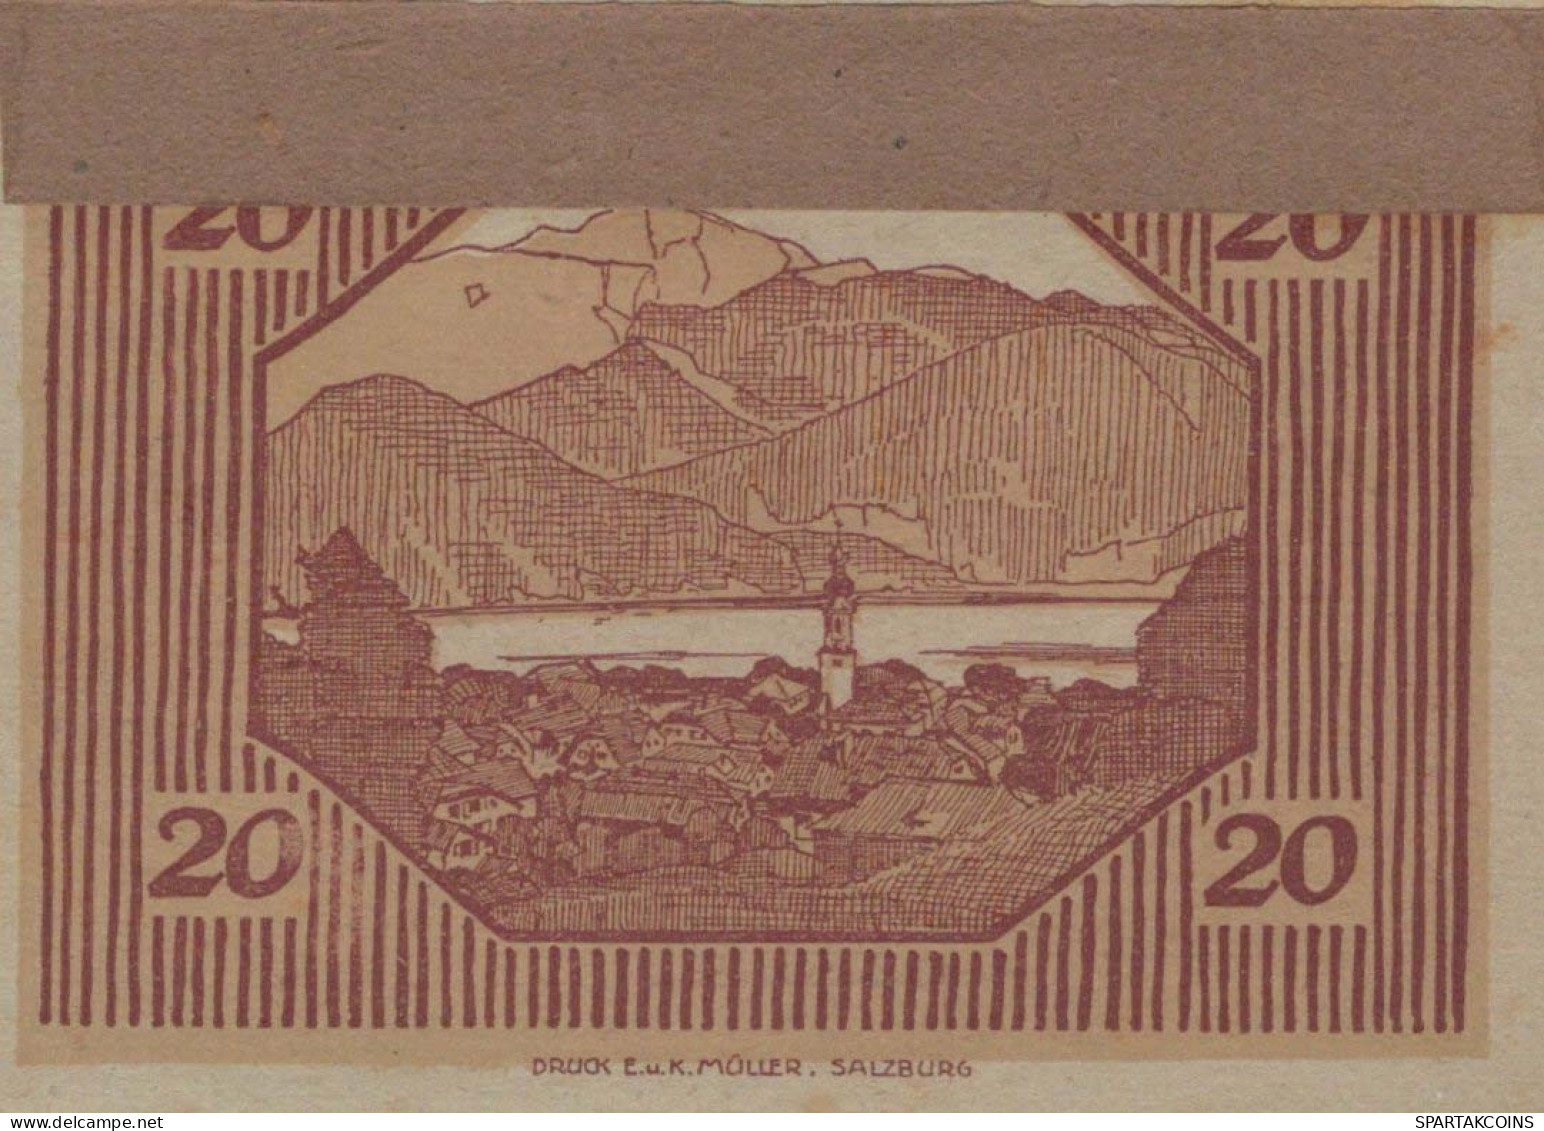 20 HELLER 1920 Stadt SANKT GILGEN Salzburg Österreich Notgeld Banknote #PI278 - [11] Local Banknote Issues